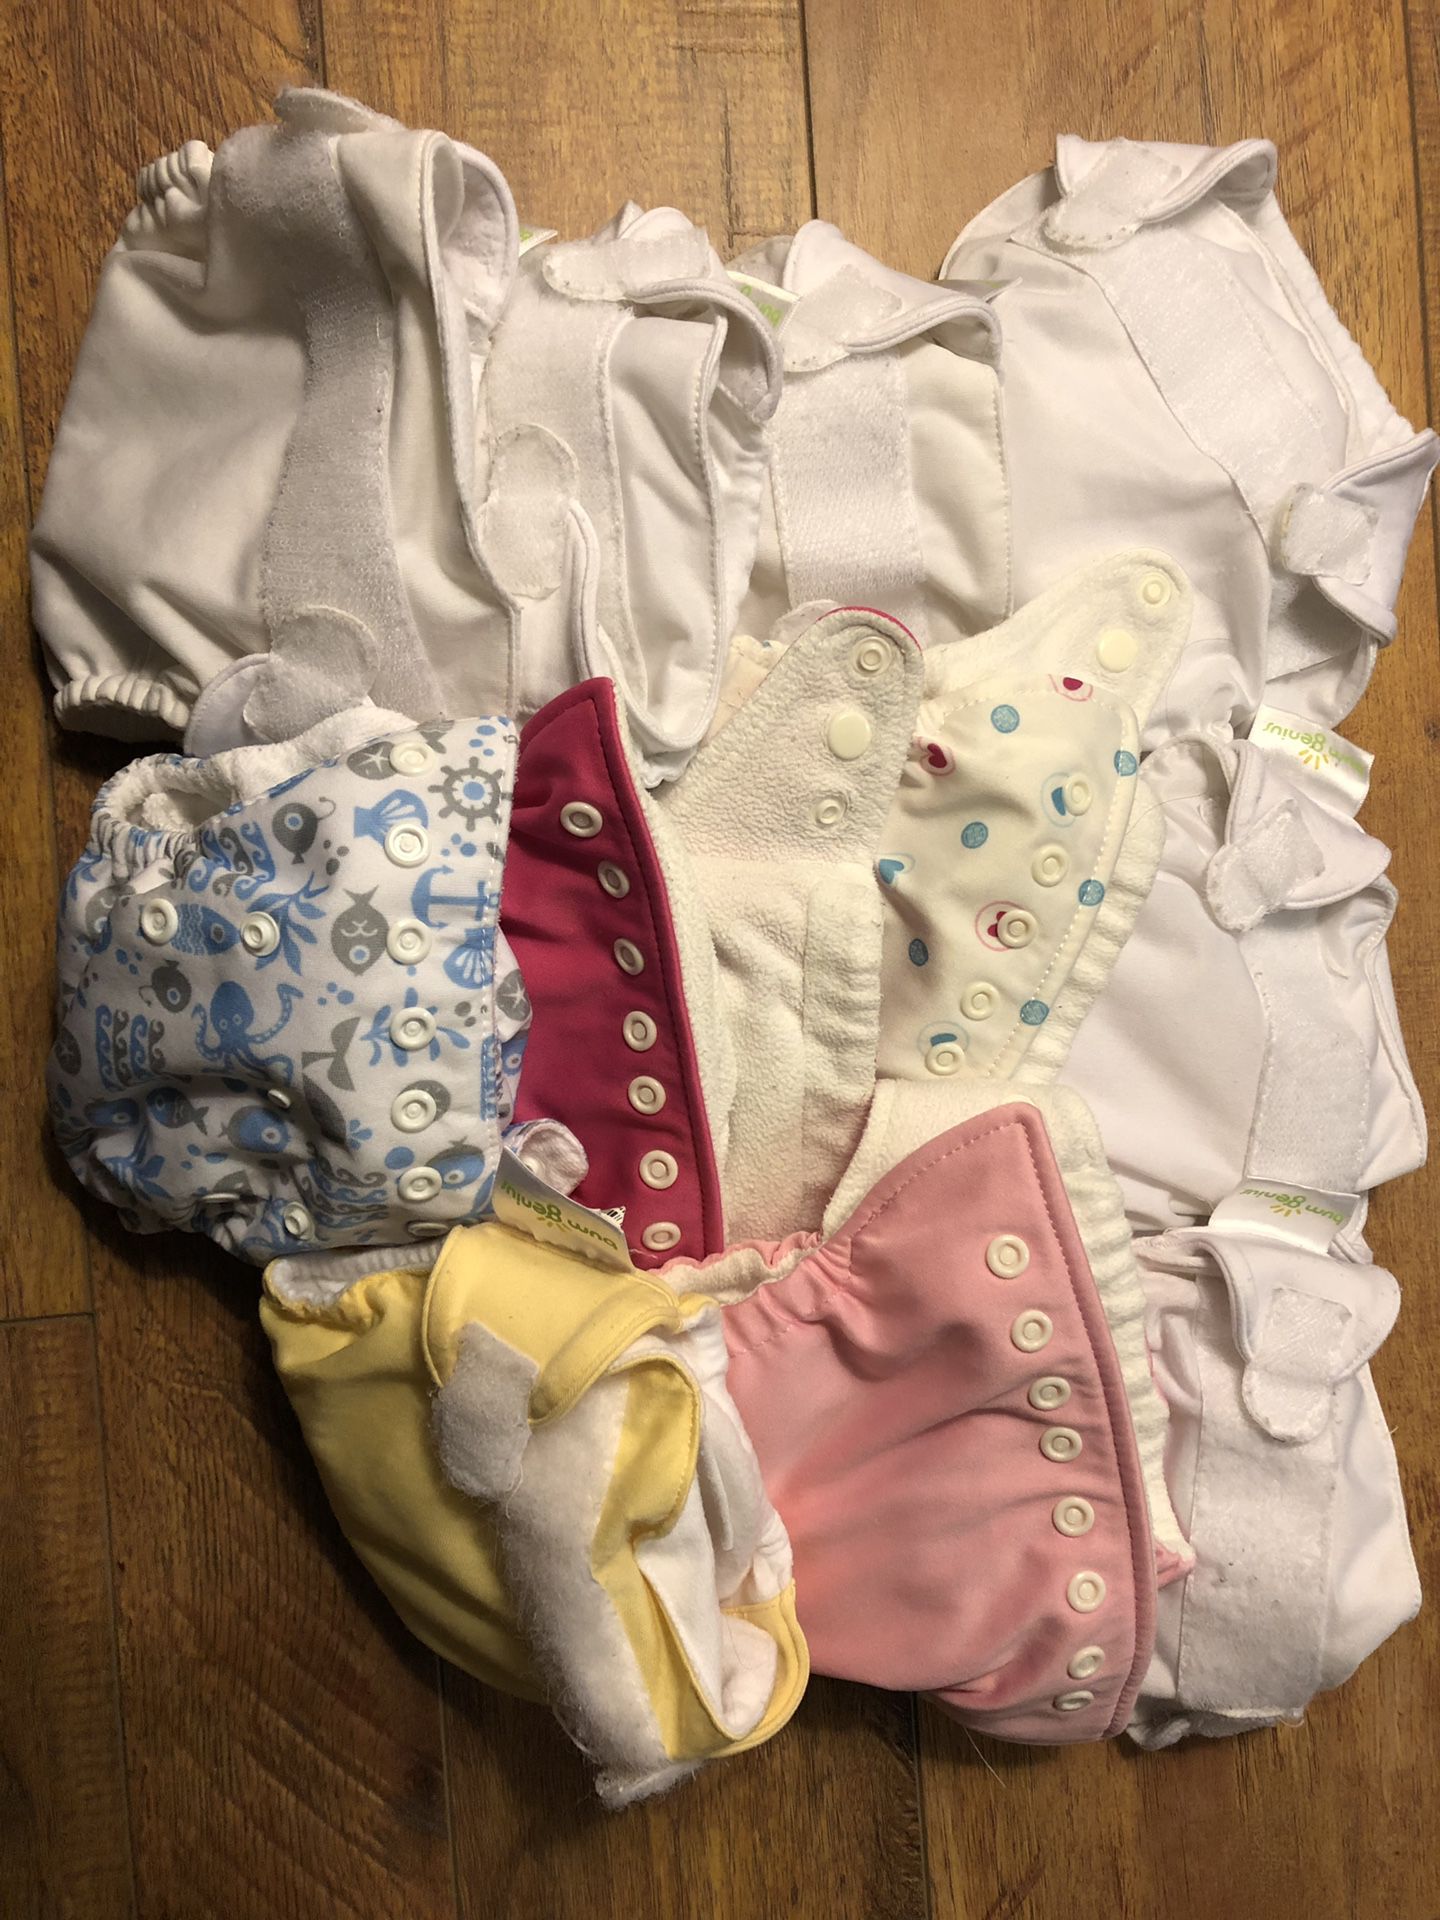 11 newborn cloth diapers